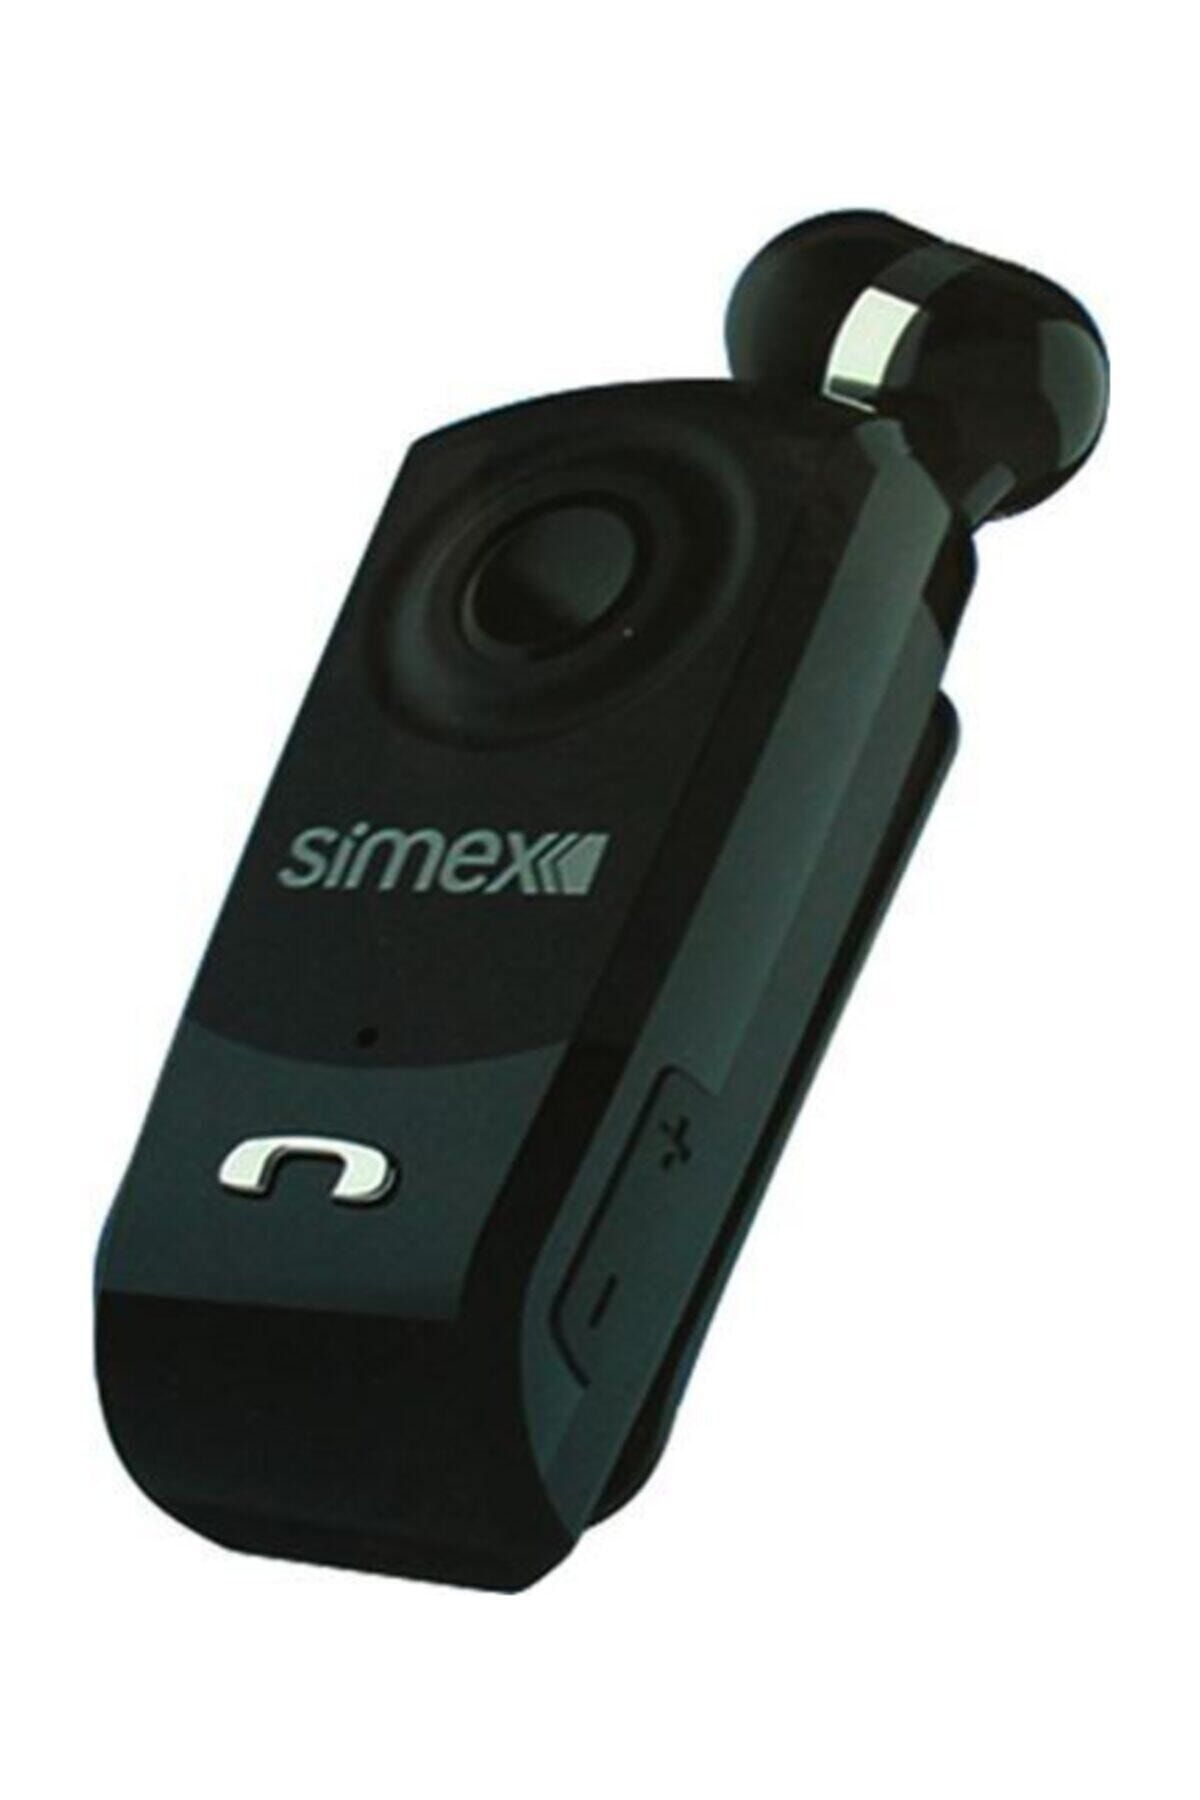 Simex Yüksek Ses ve Titreşimli Practica Mikrofonlu Bluetooth Siyah Kulaklık